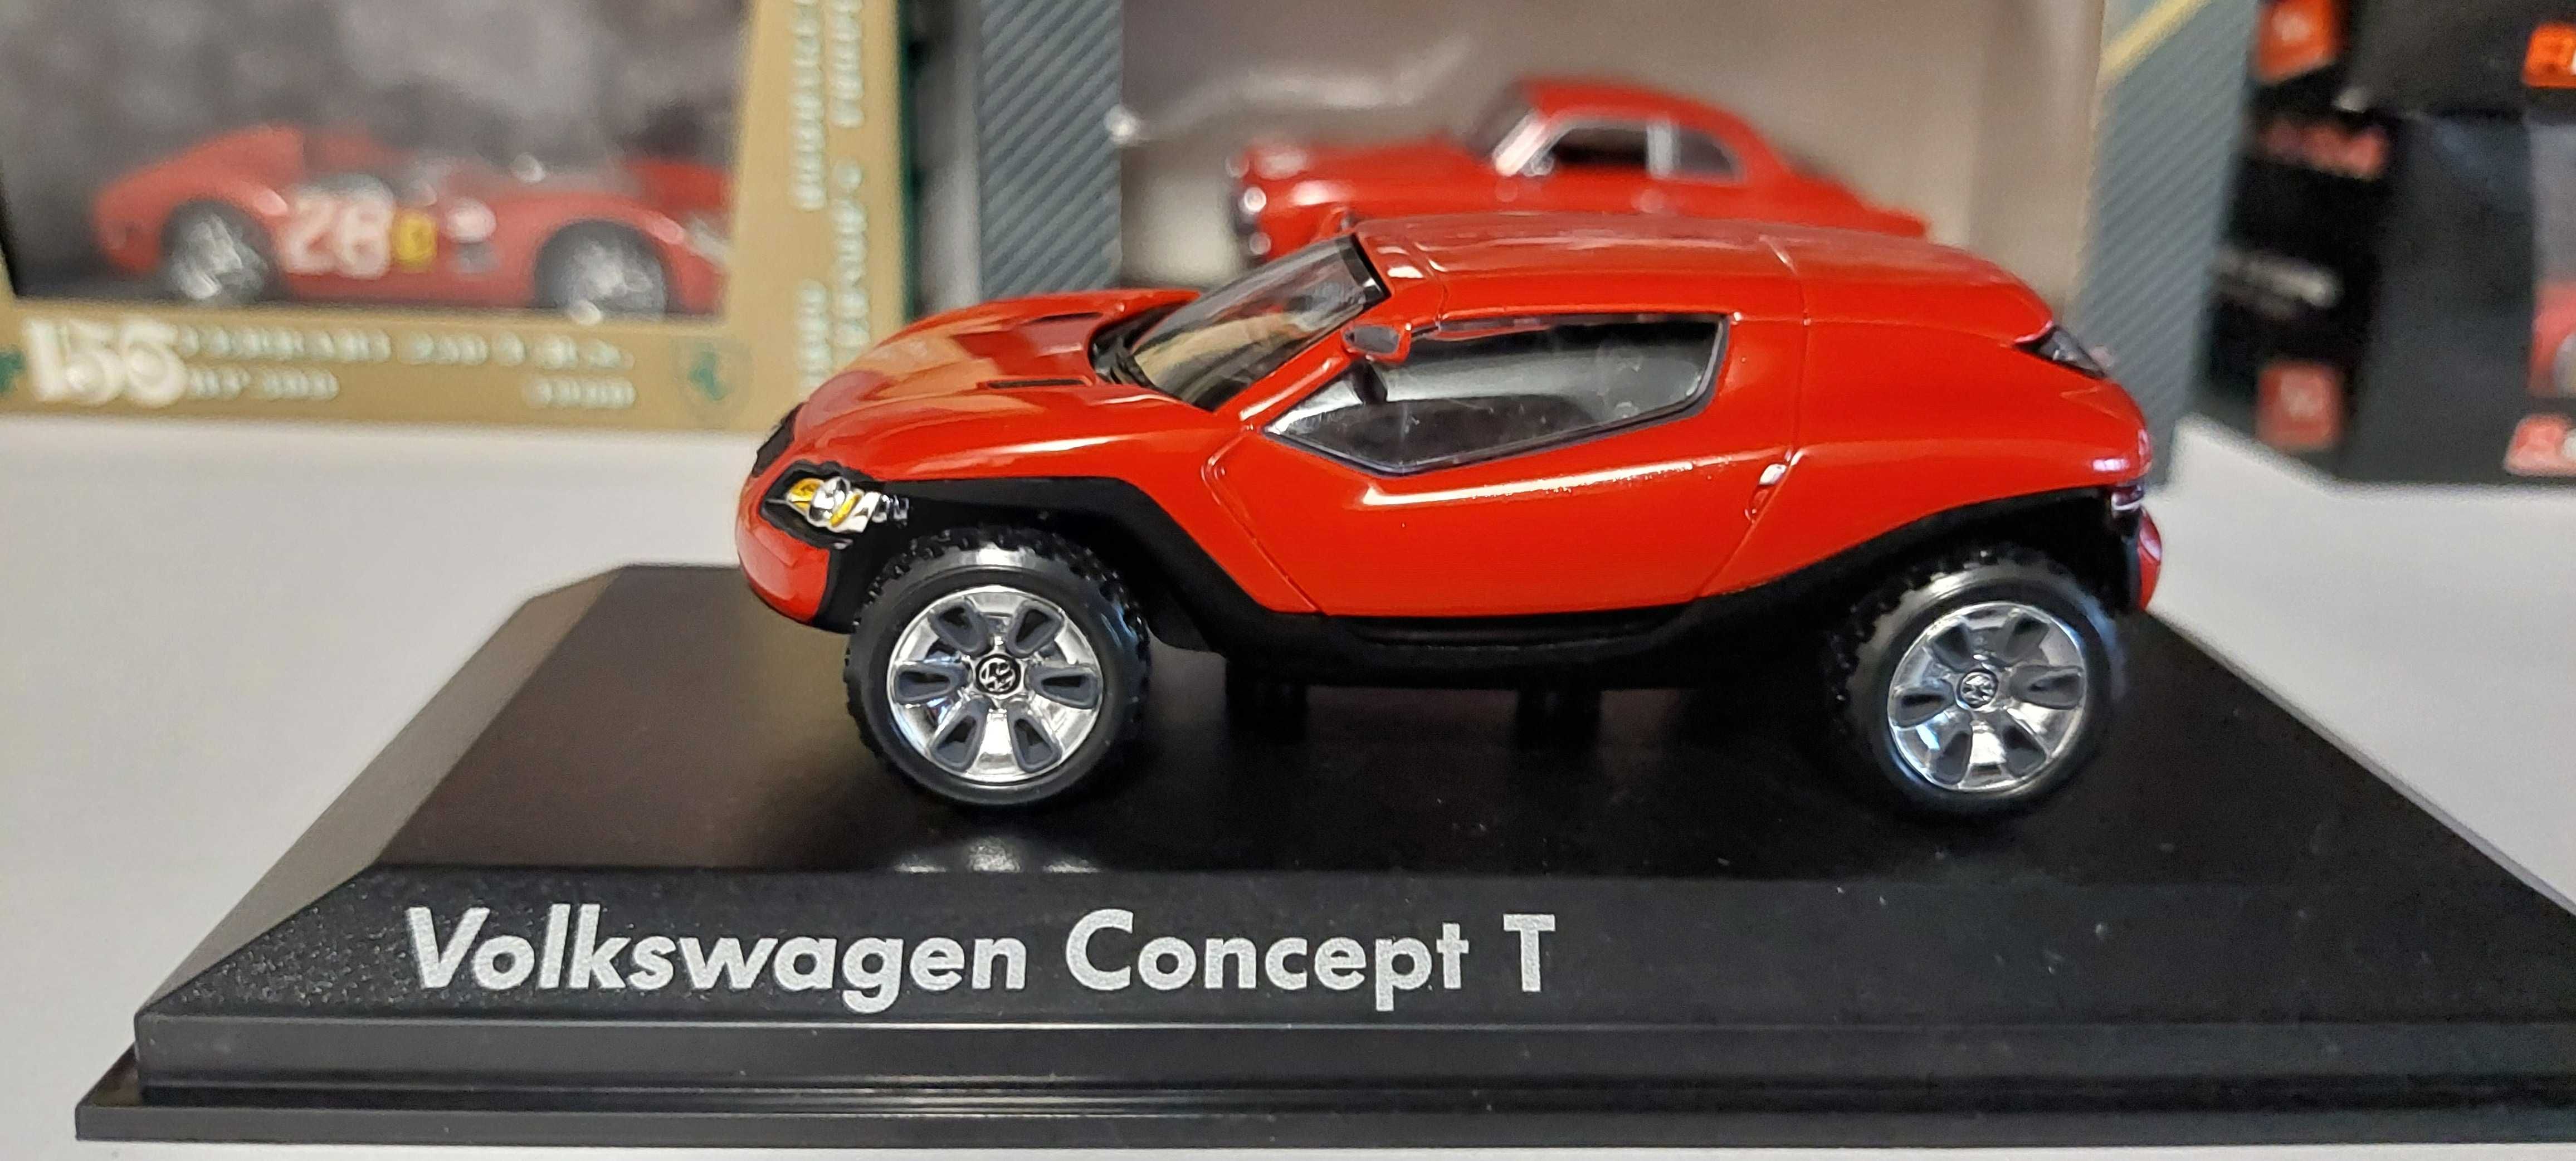 Machete de colectie Volkswagen Opel